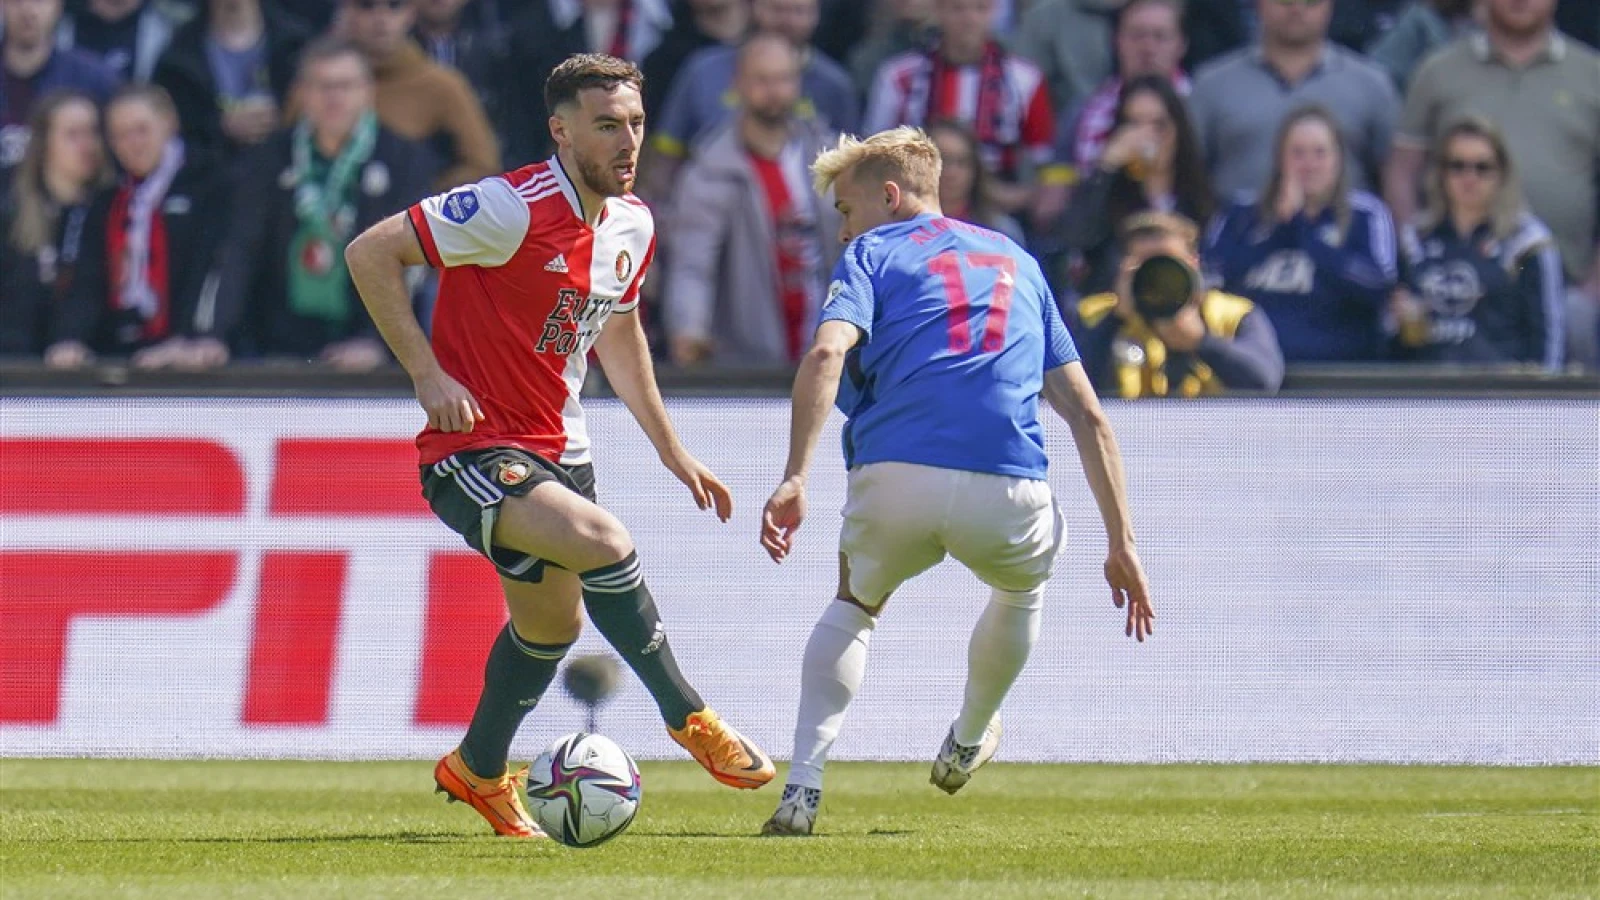 LIVE | Feyenoord - FC Utrecht 2-1 | Einde wedstrijd